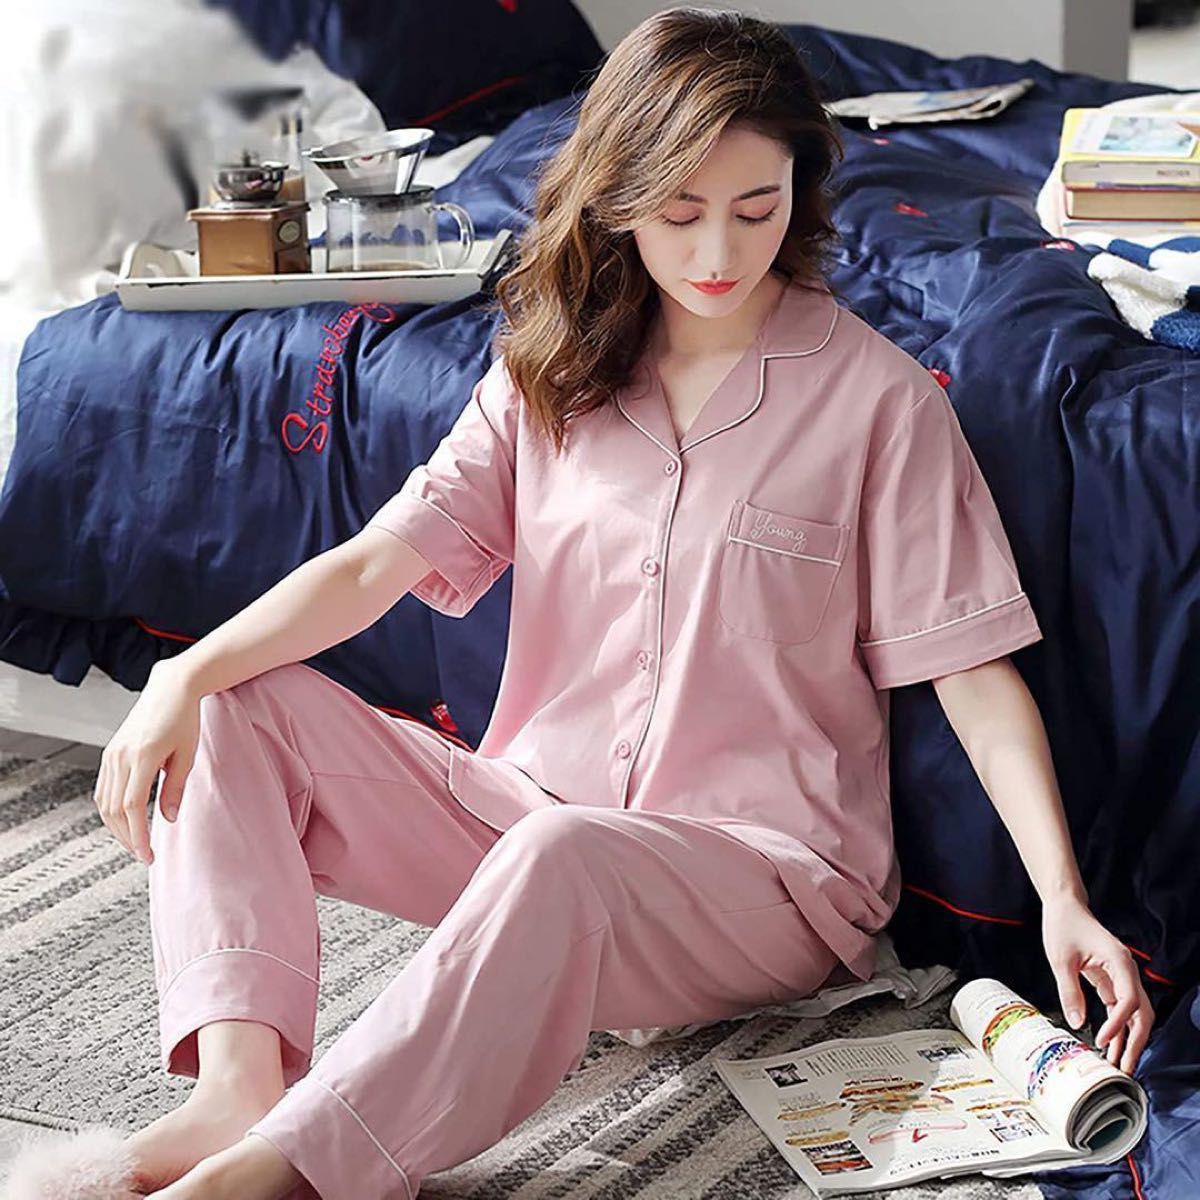 【新品未使用】綿100% レディース パジャマ ルームウェア ピンク サイズ 半袖 長ズボン コットン100